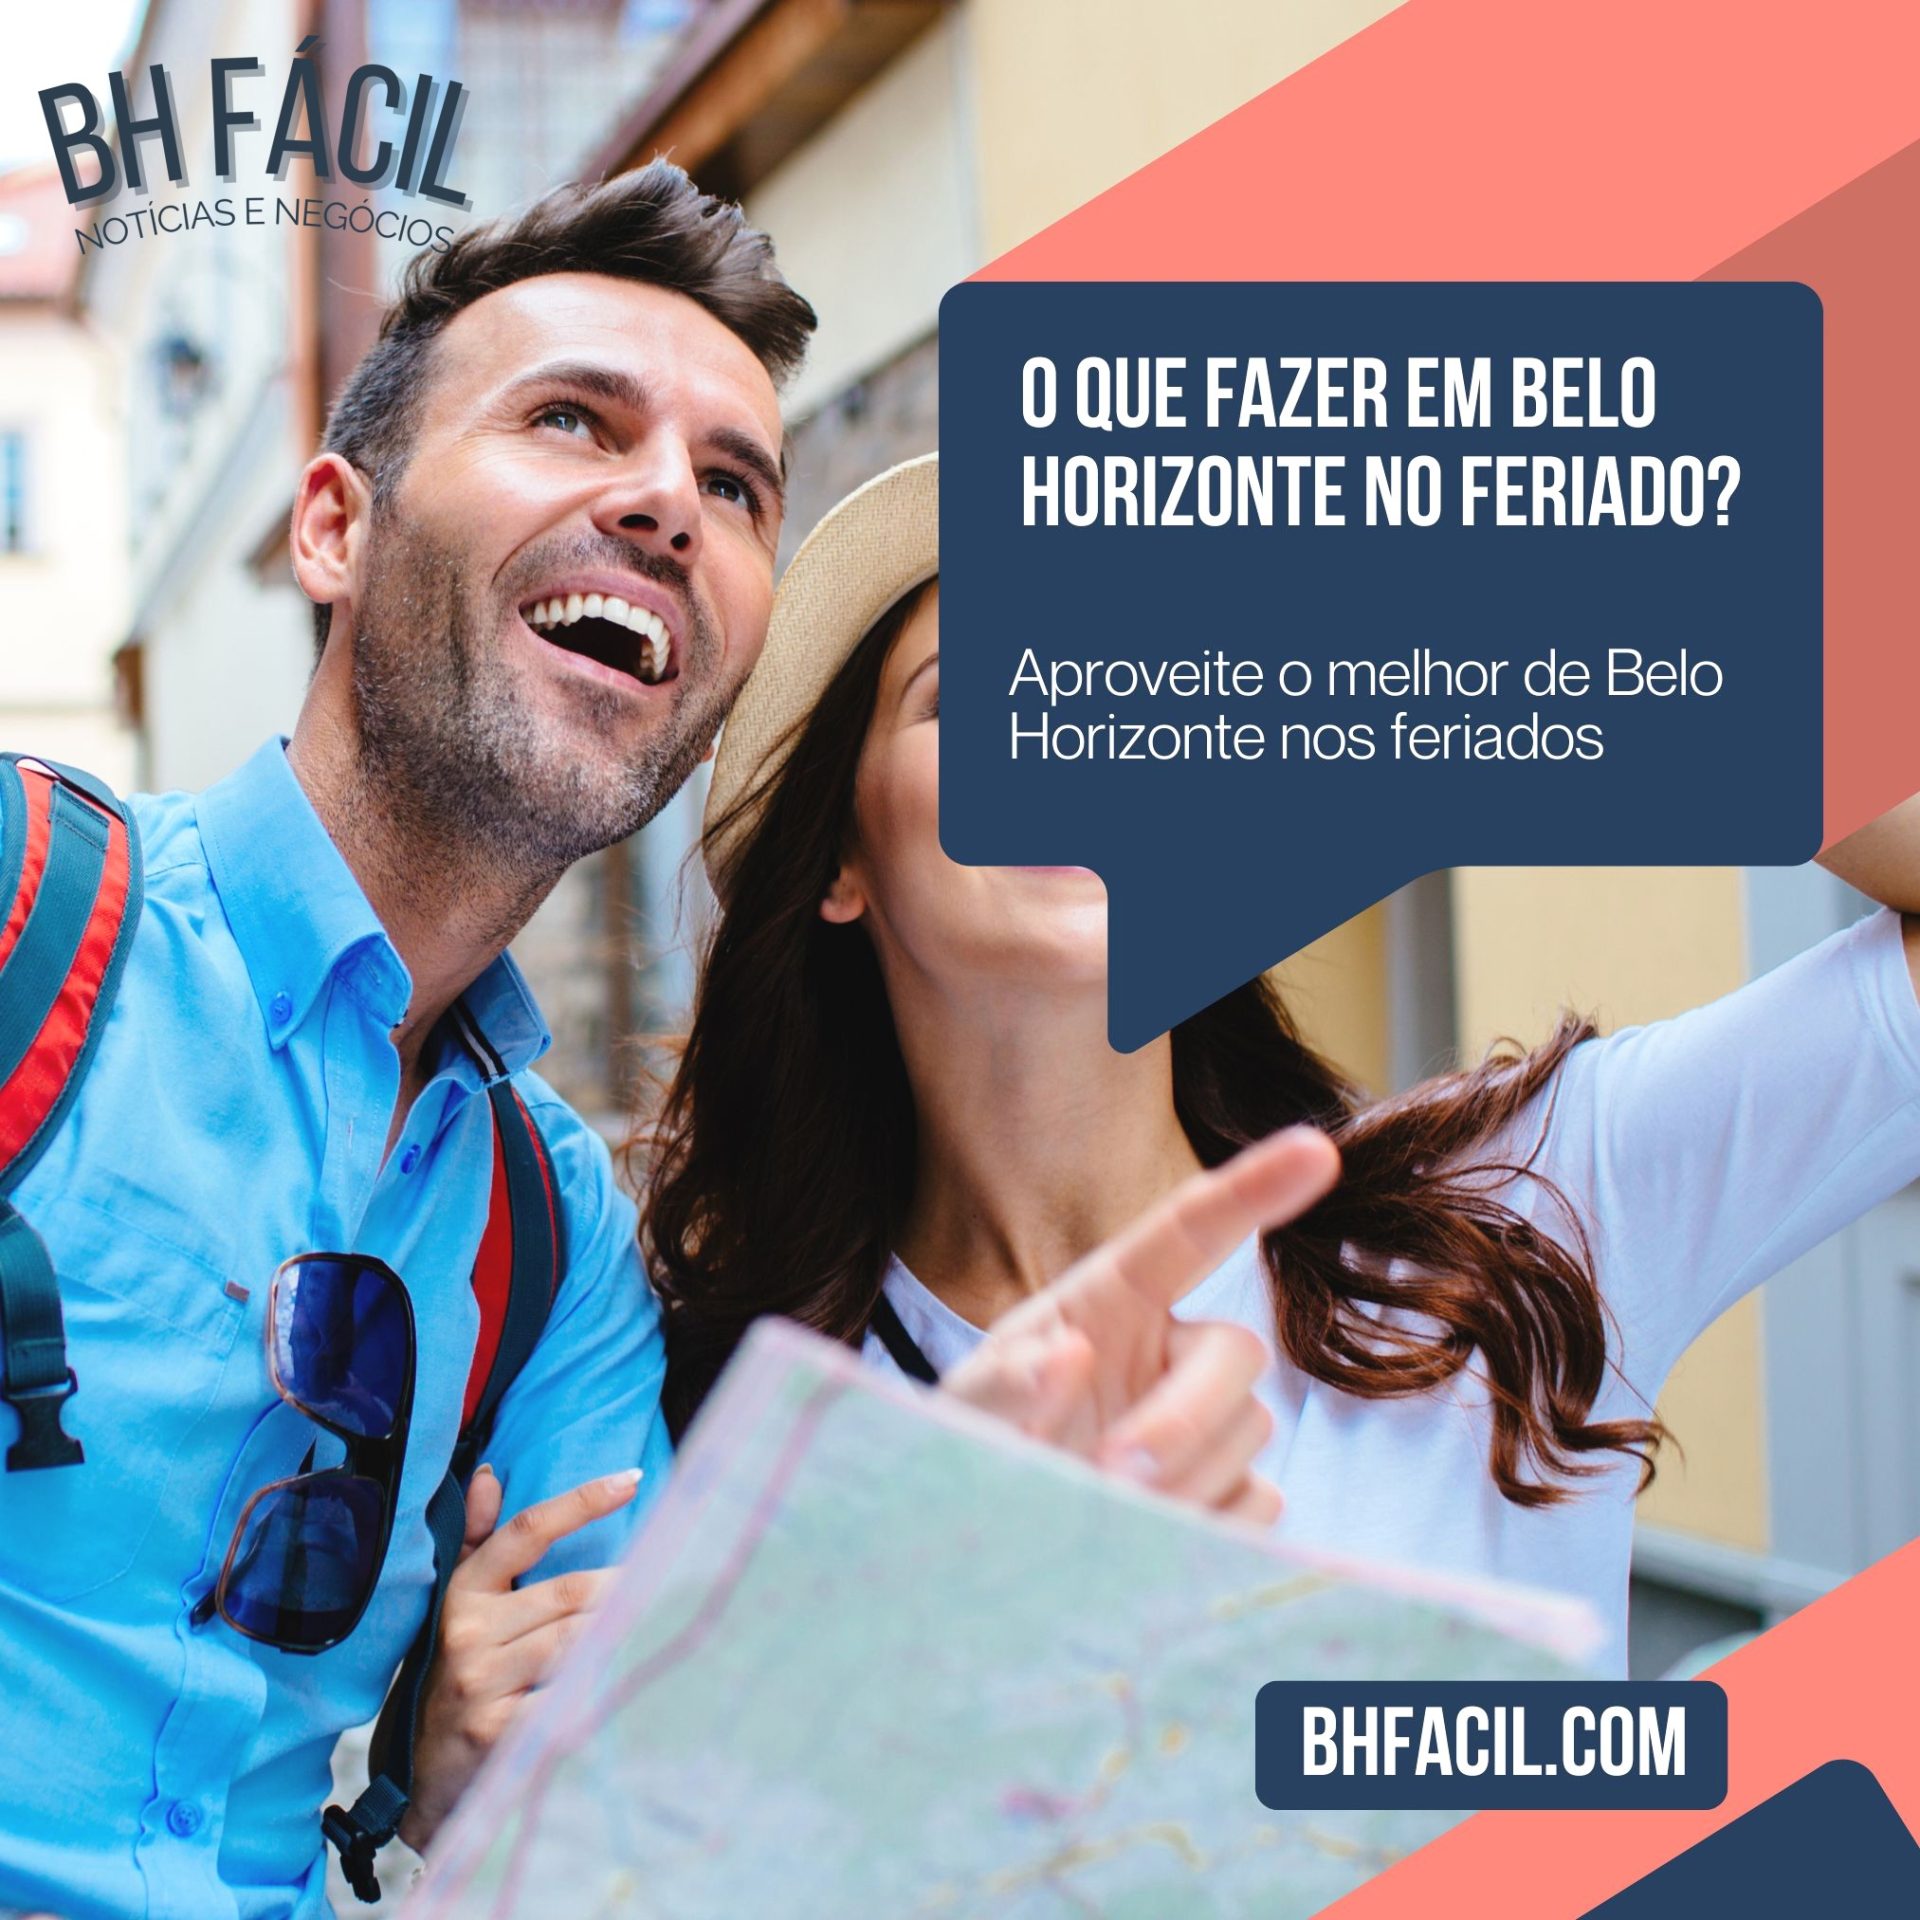 O que fazer em Belo Horizonte no feriado?